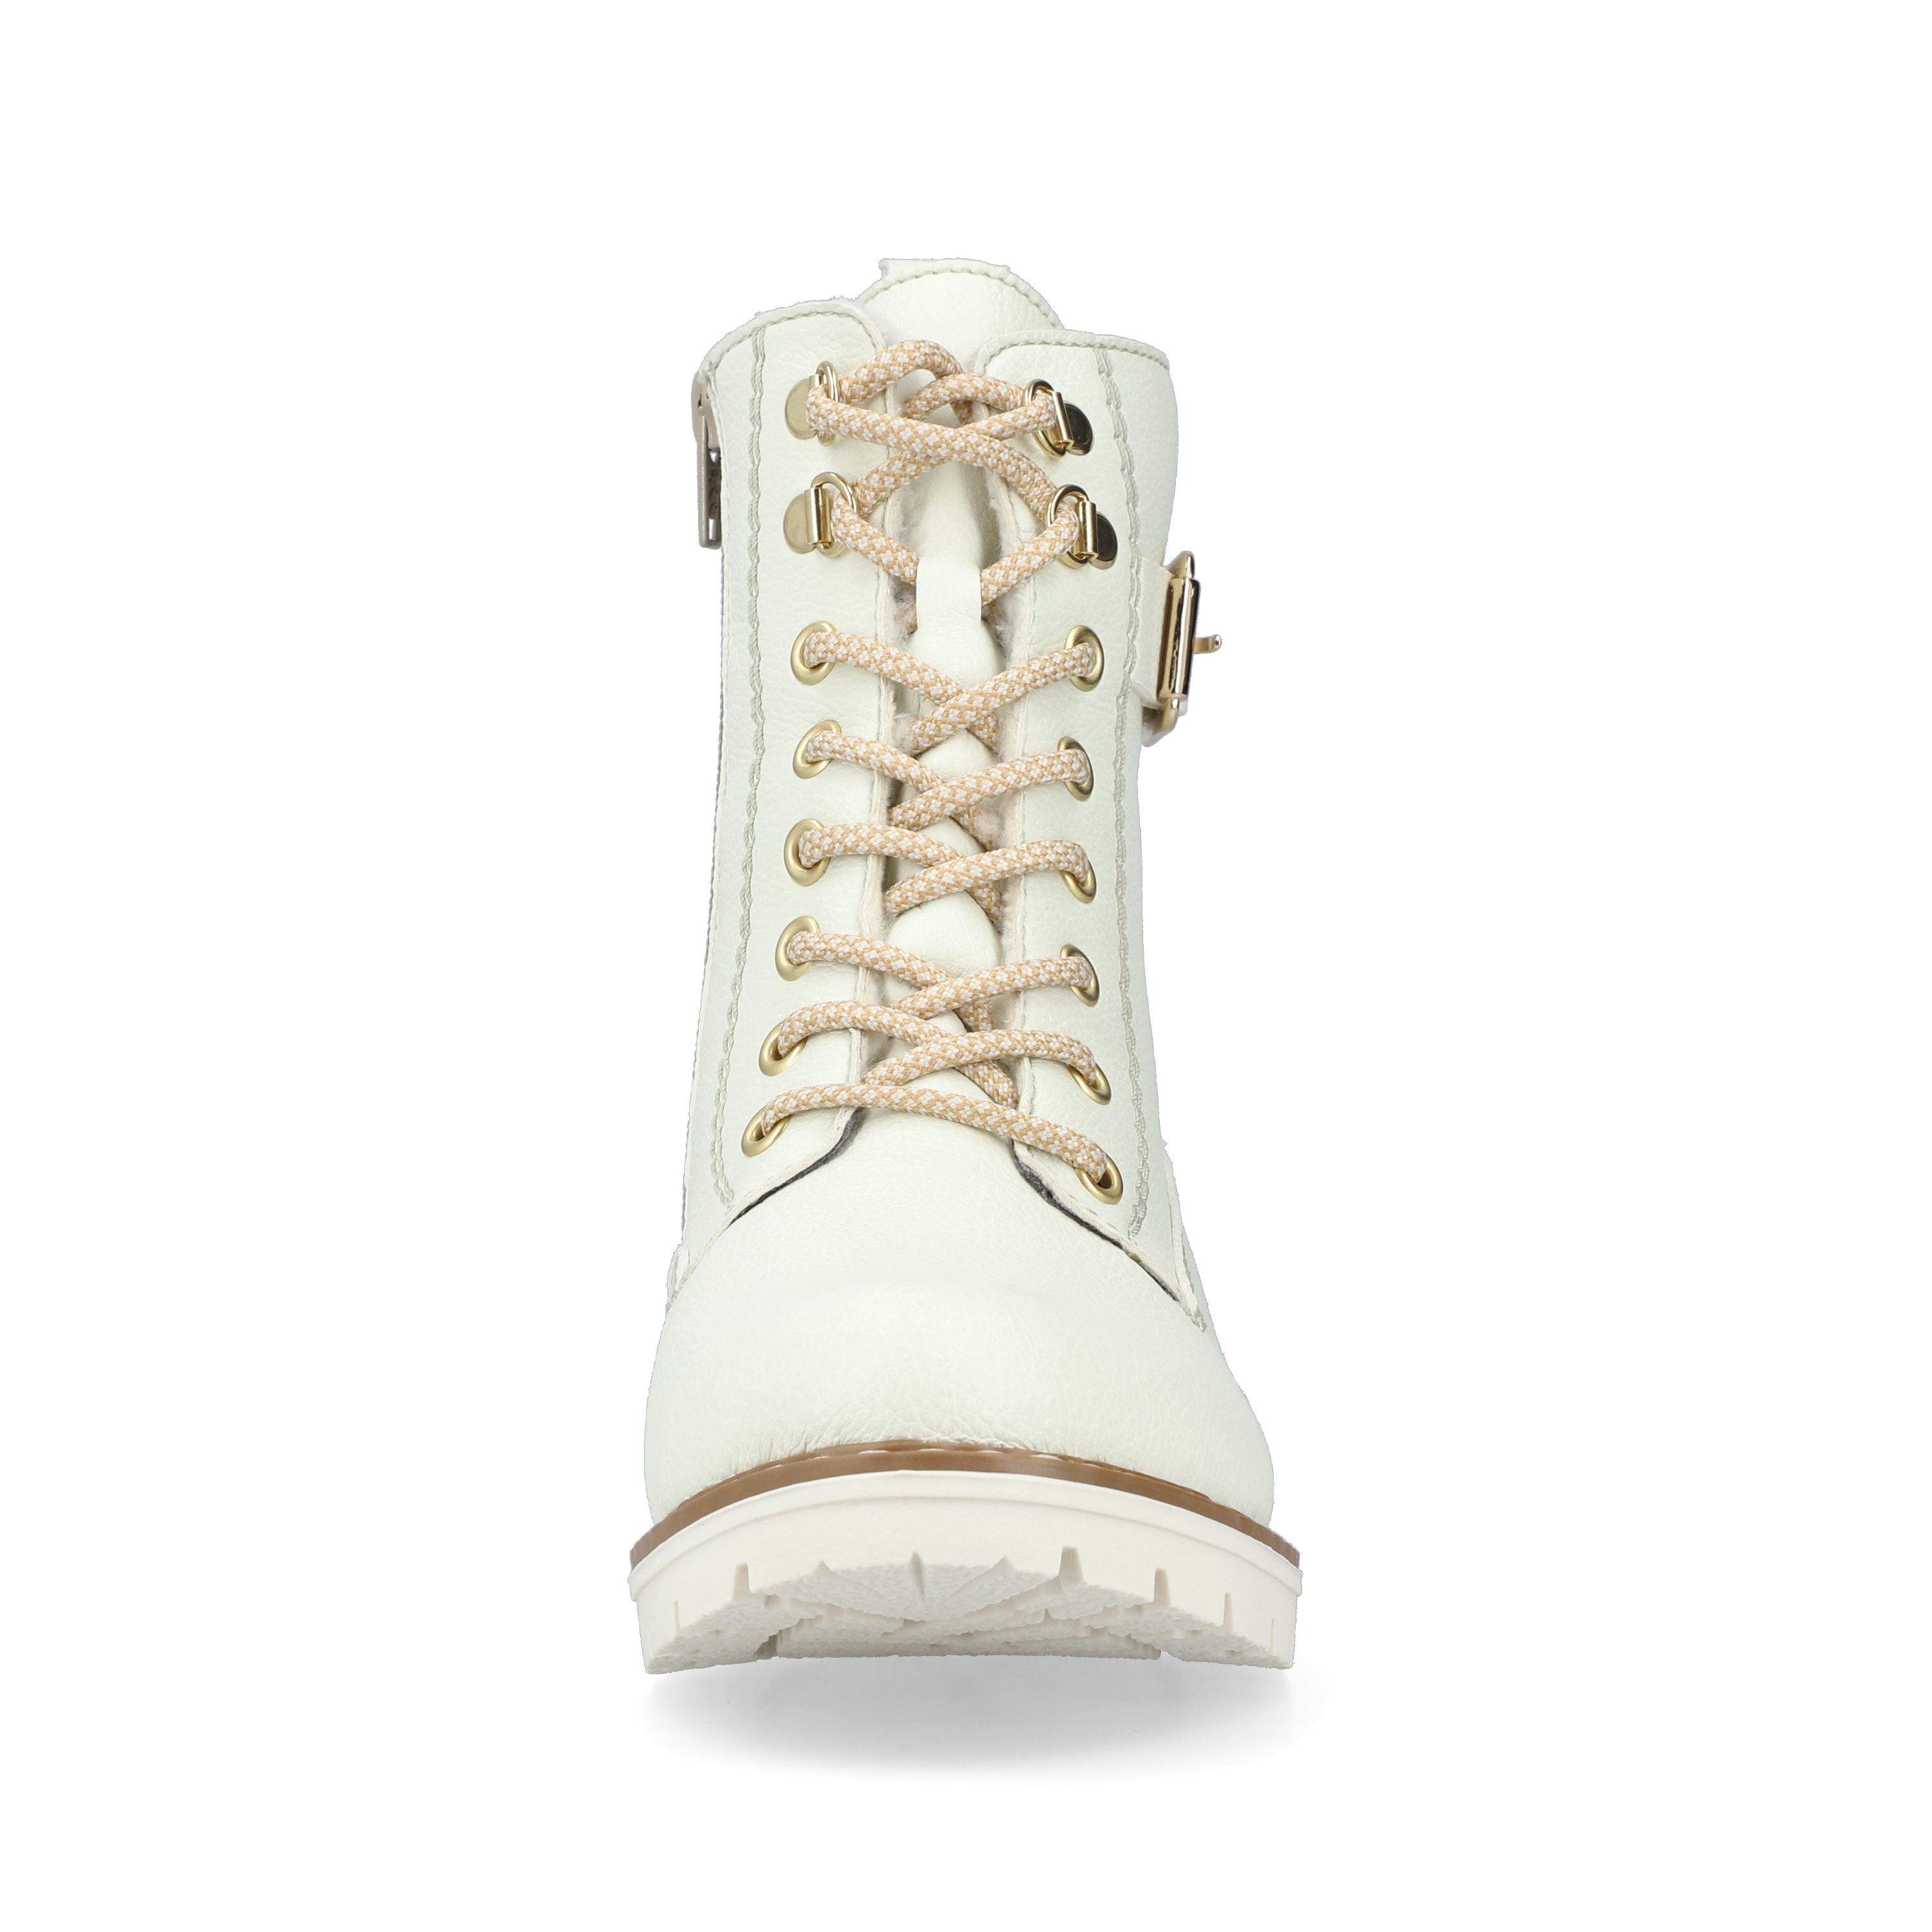 Bottines blanches chaudes pour femme marque Rieker. Référence Y9126-80 Dirty White. Disponible chez Chauss'Family magasin de chaussures Issoire.